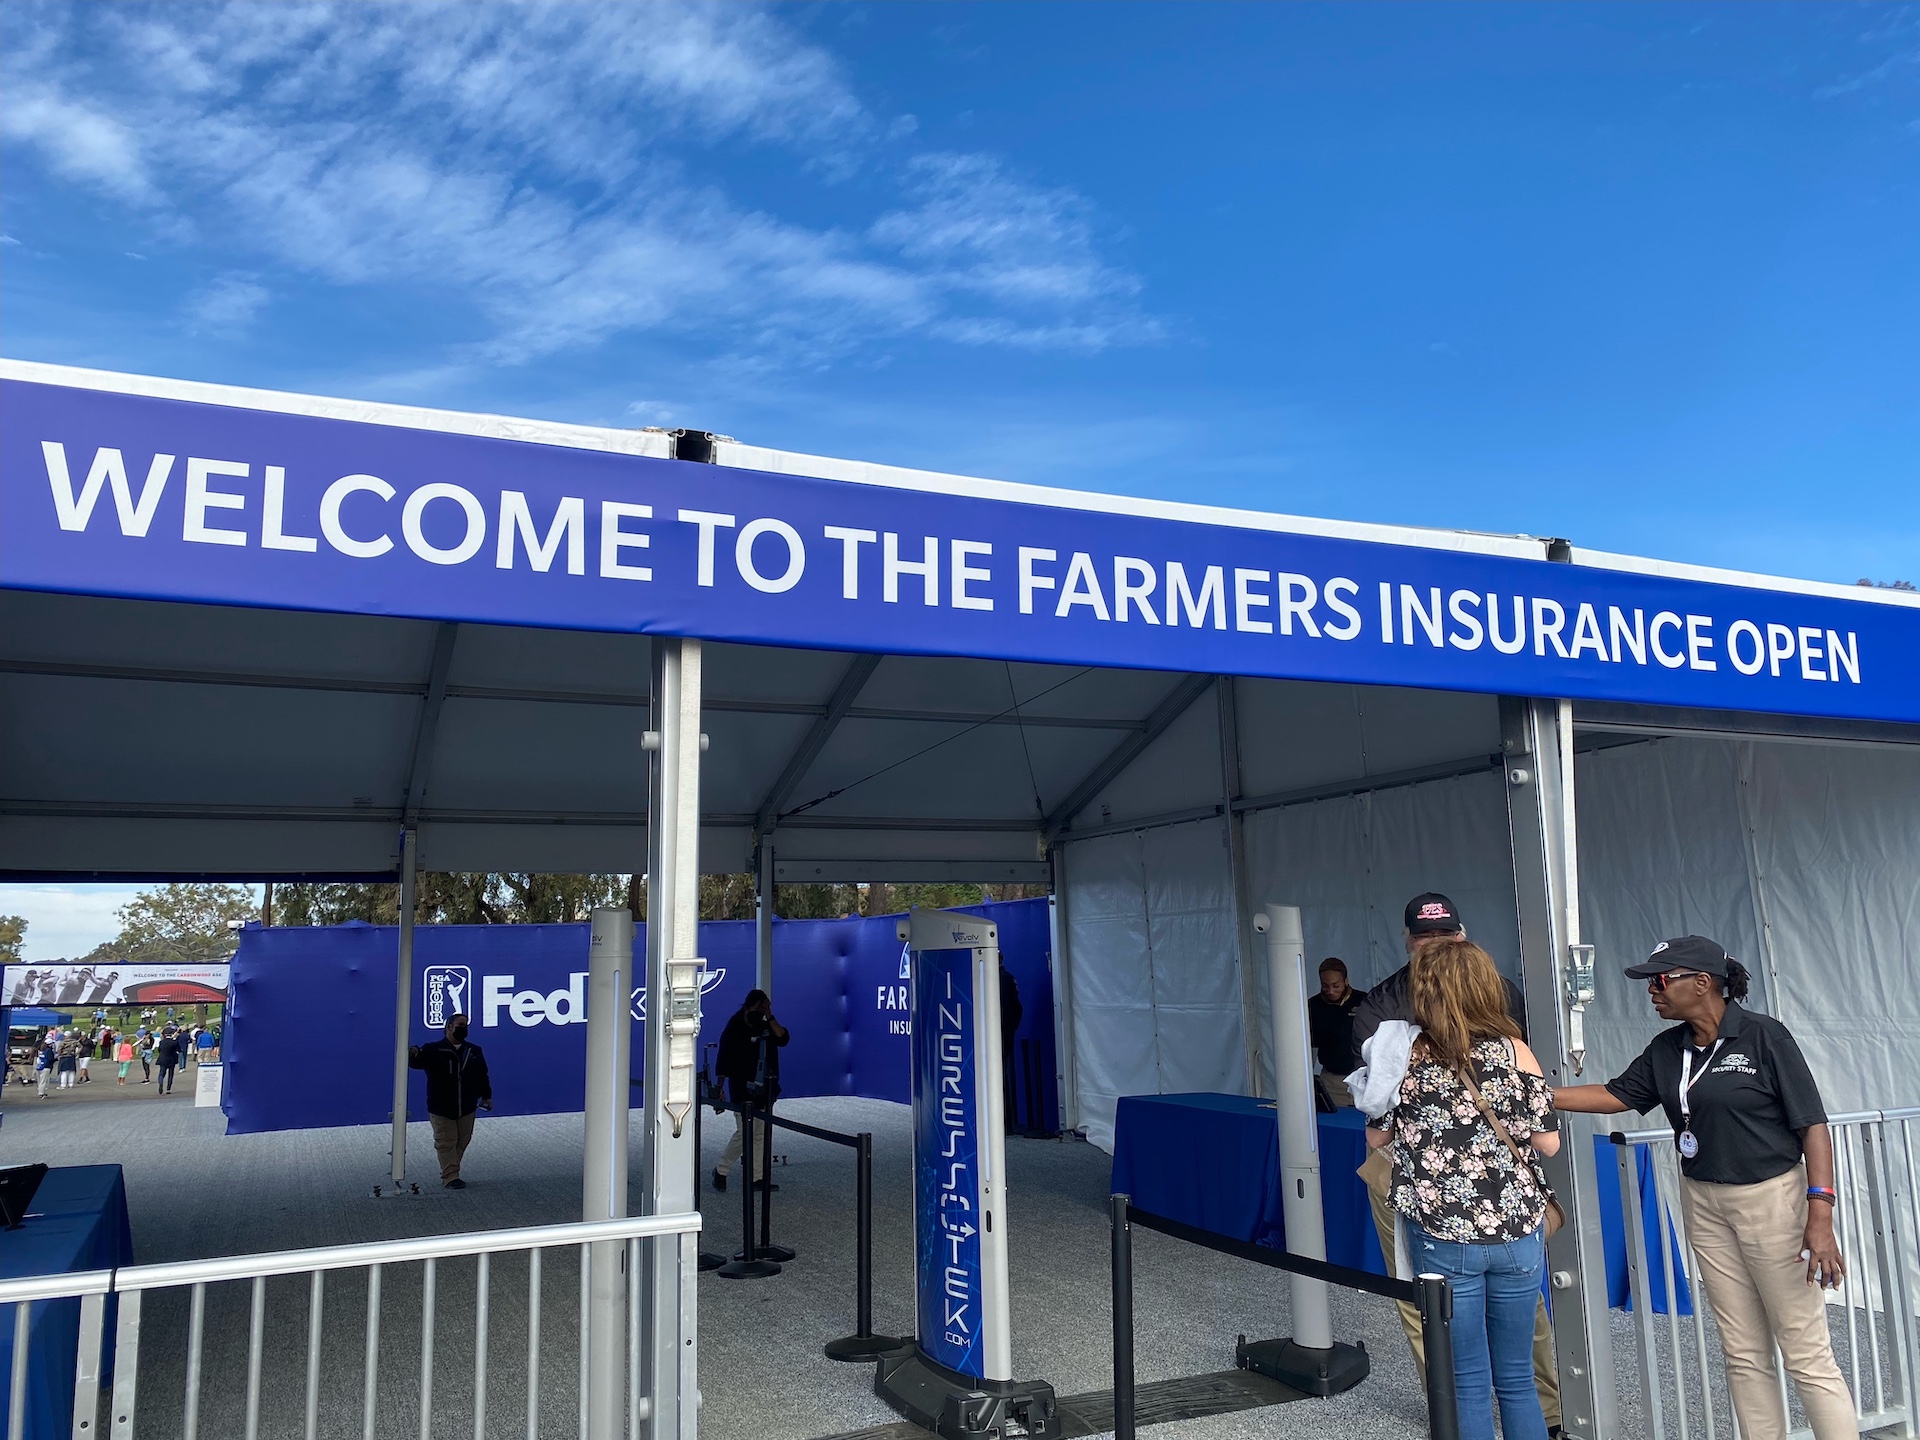 Farmer's Insurance Open security